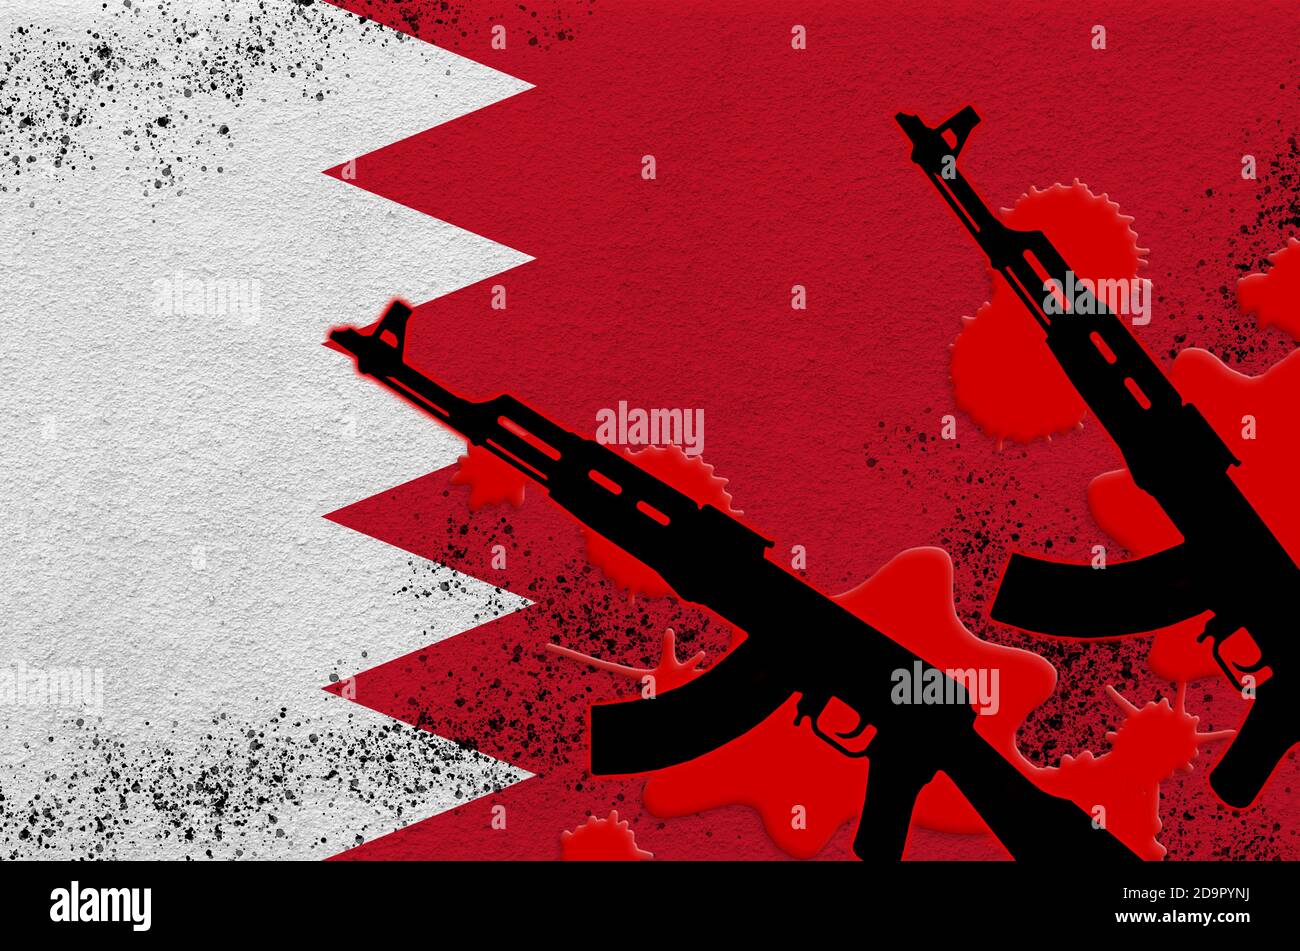 Drapeau de Bahreïn et deux fusils noirs AK-47 de sang rouge. Concept d'attaque terroriste ou d'opérations militaires avec un résultat mortel. Utilisation d'armes dangereuses Banque D'Images